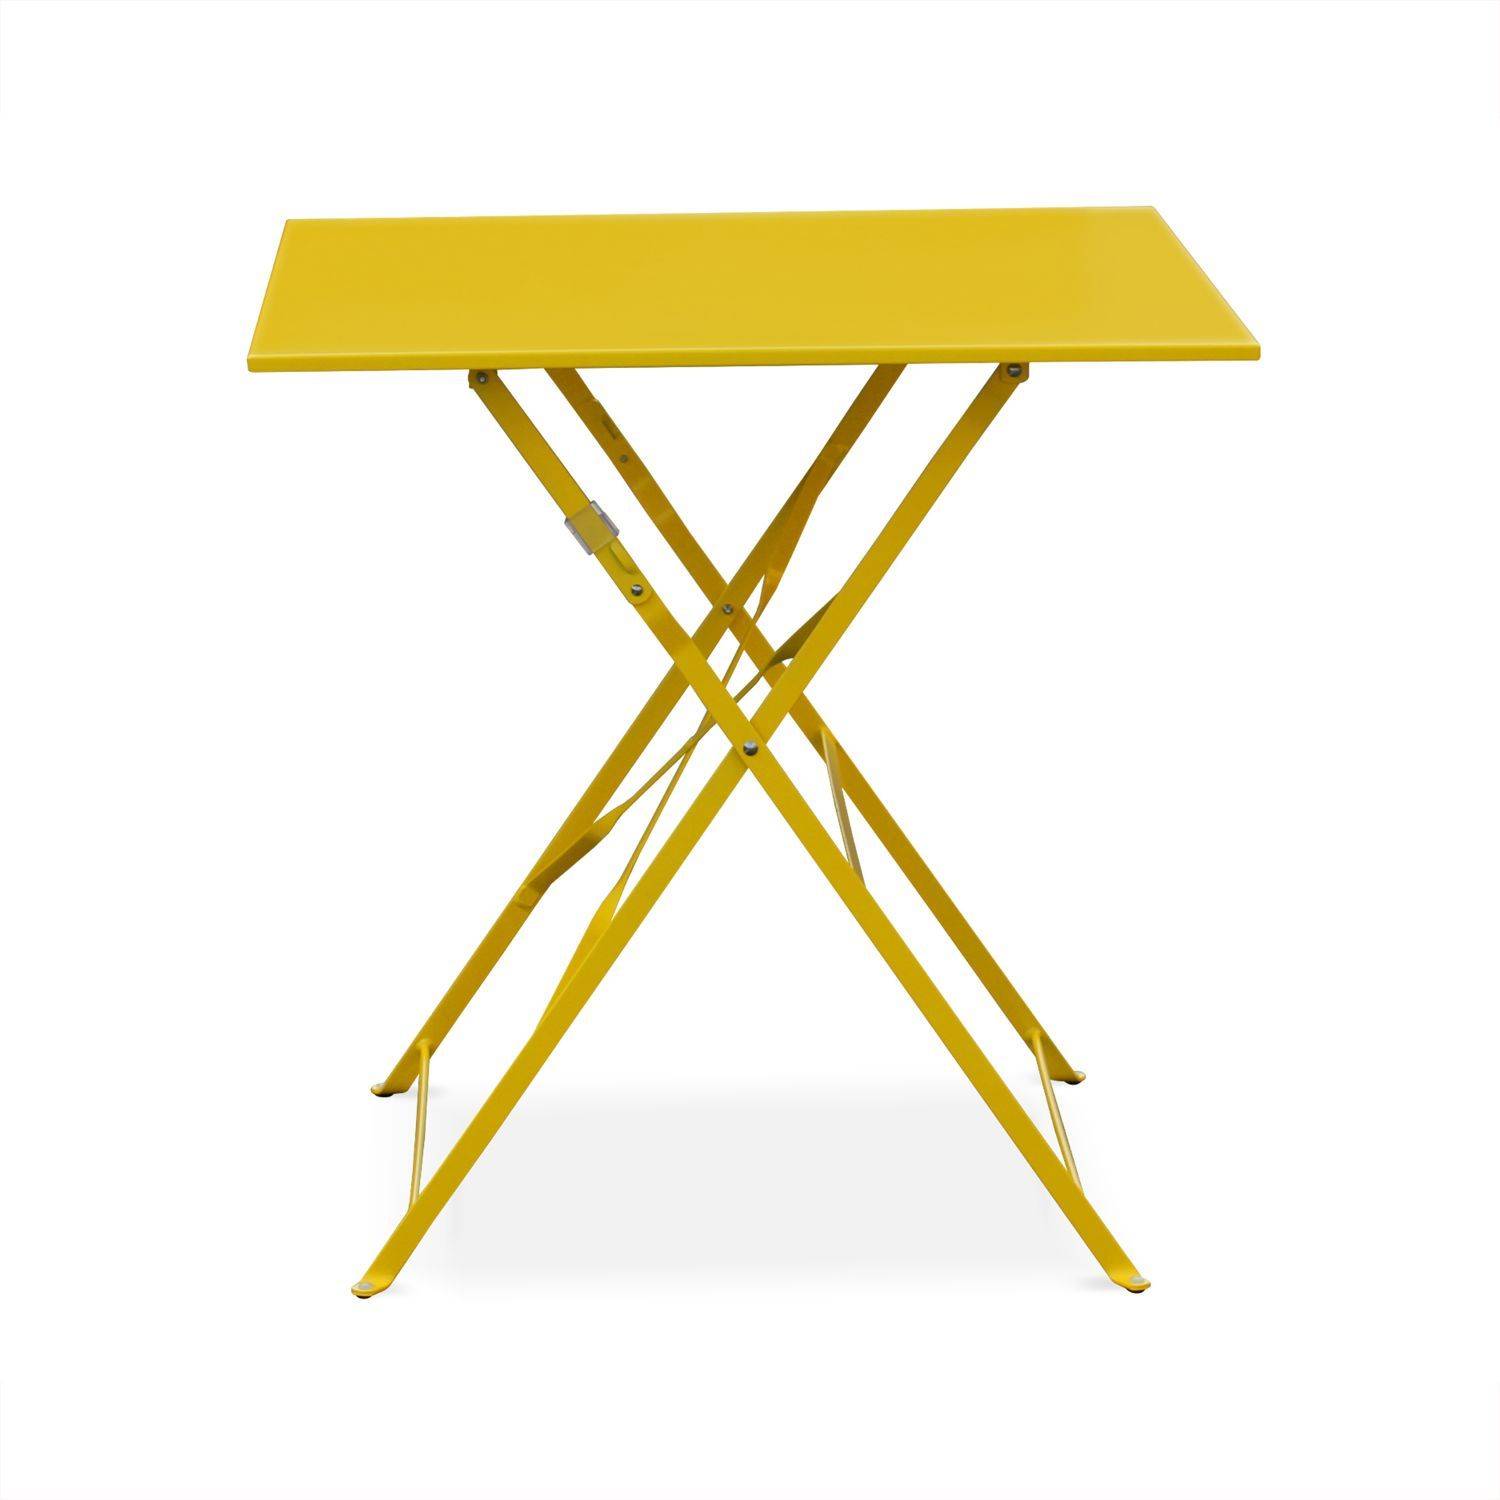 Klappbare Bistro-Gartenmöbel - Emilia quadratisch gelb - Tisch 70x70cm mit zwei Klappstühlen aus pulverbeschichtetem Stahl Photo3